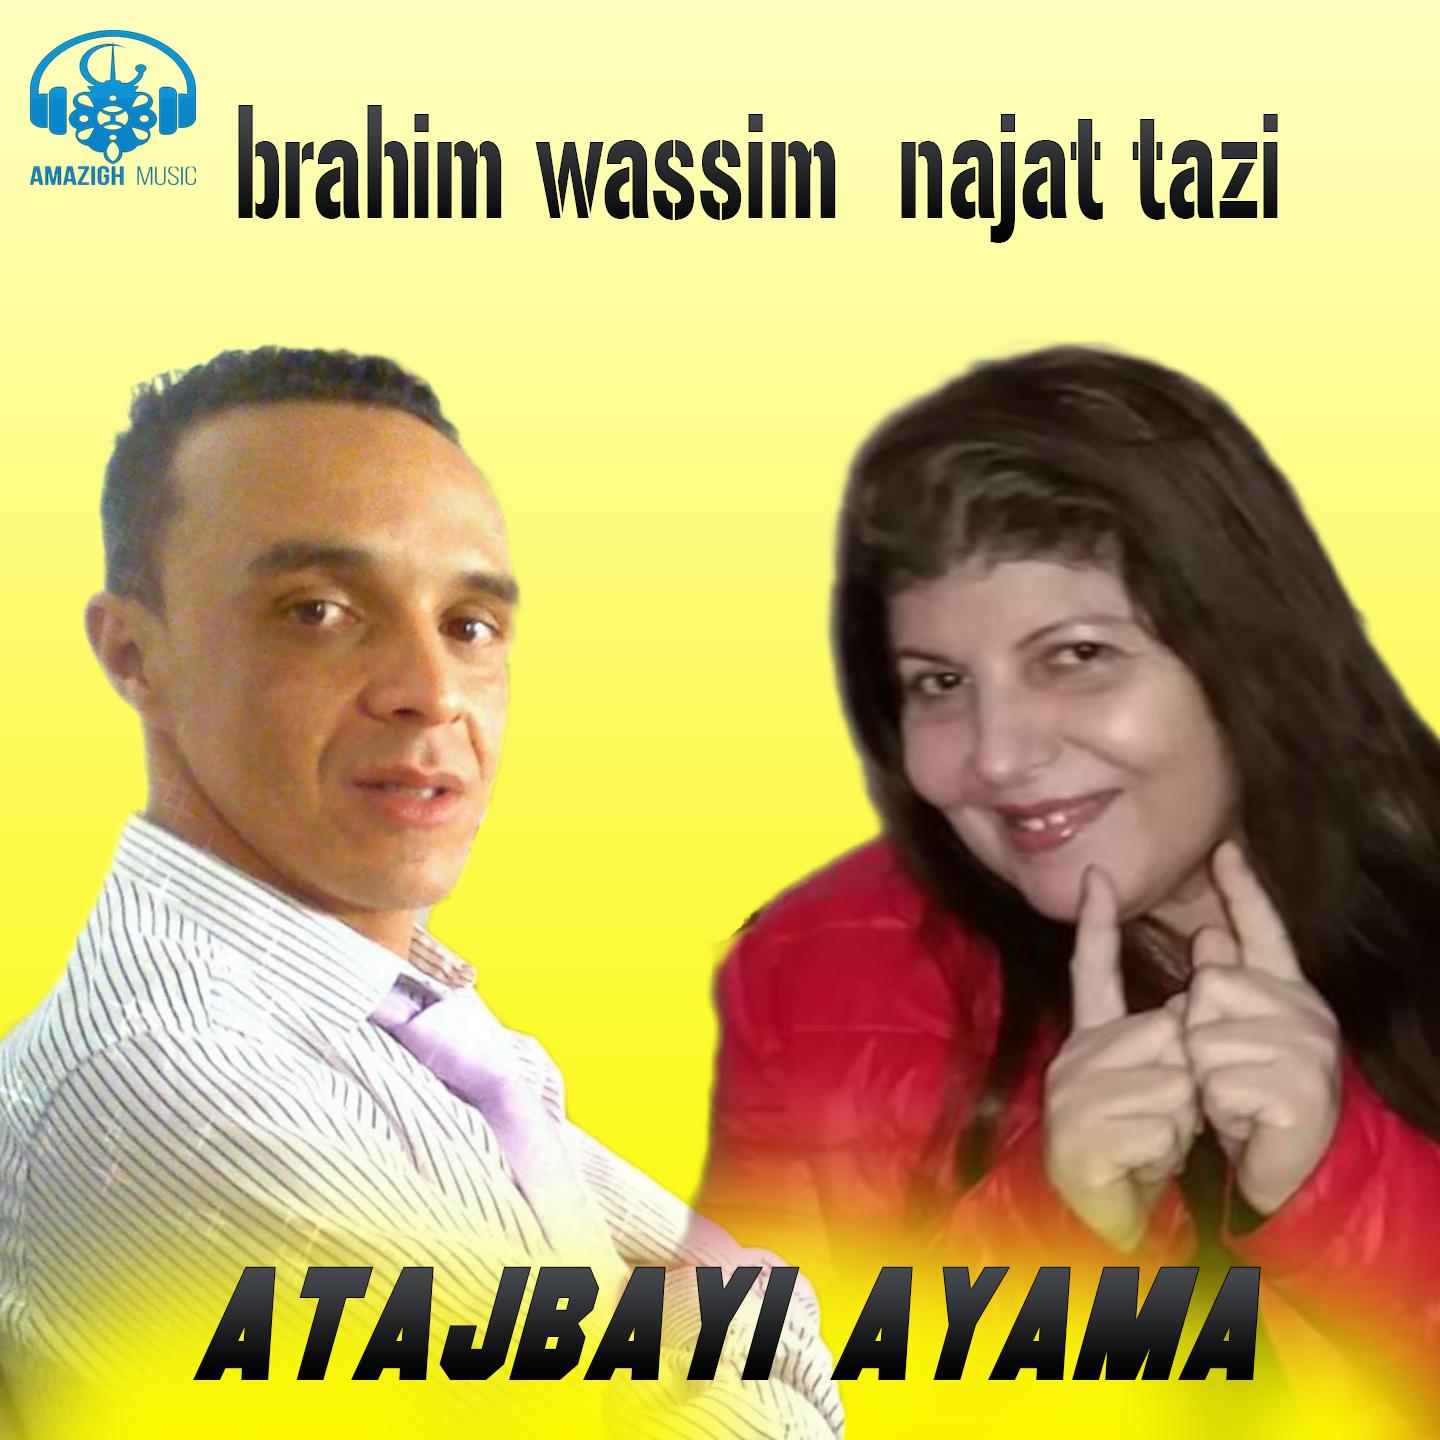 Brahim Wassim - tanidayi badayi